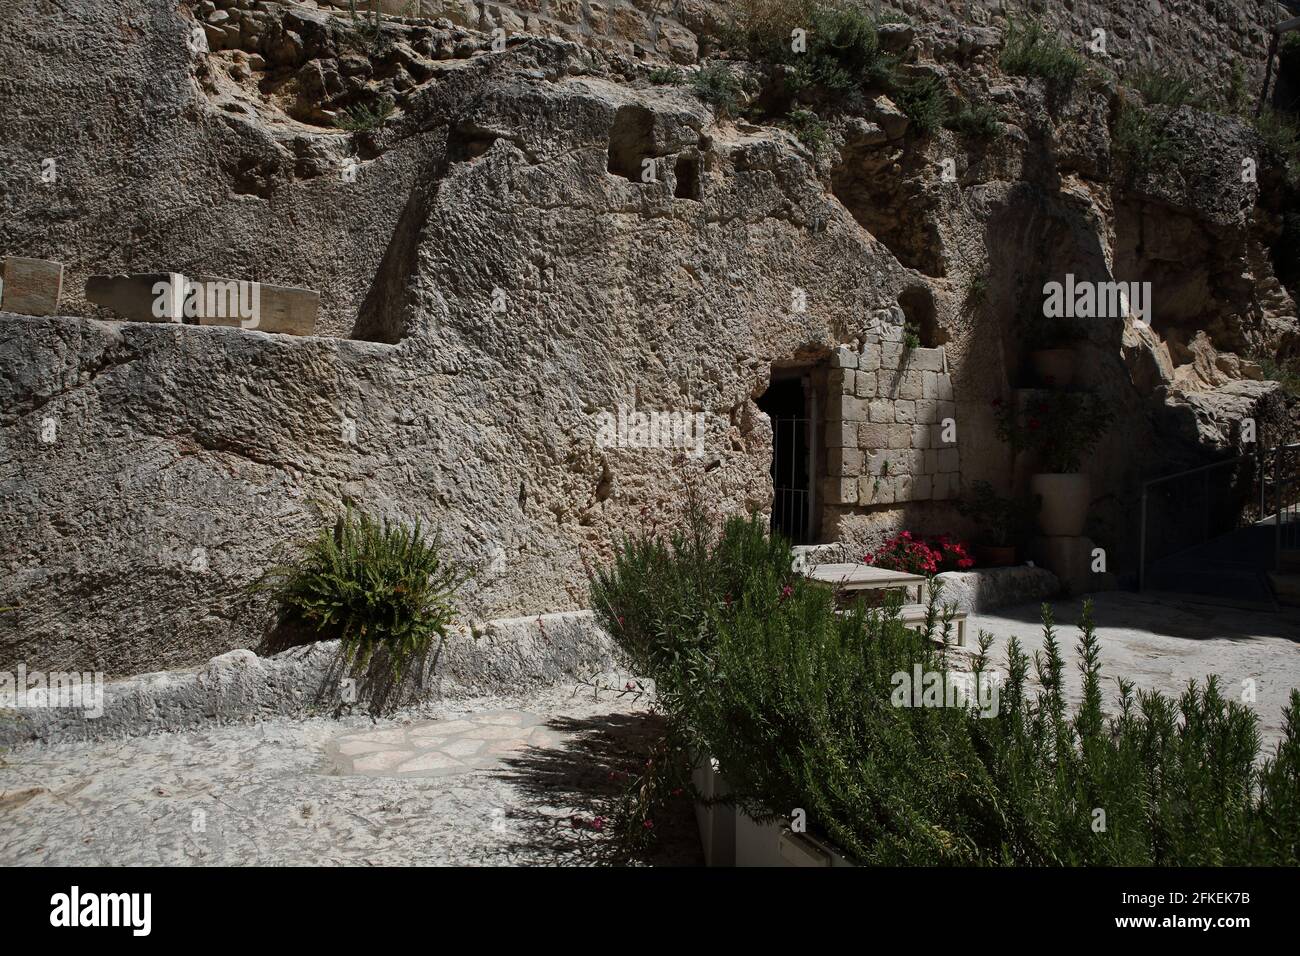 Das Gartengrab, eine alte jüdische Grabhöhle außerhalb der Altstadt von Jerusalem, wo einige Christen glauben, dass Jesus nach der Kreuzigung begraben wurde. Stockfoto